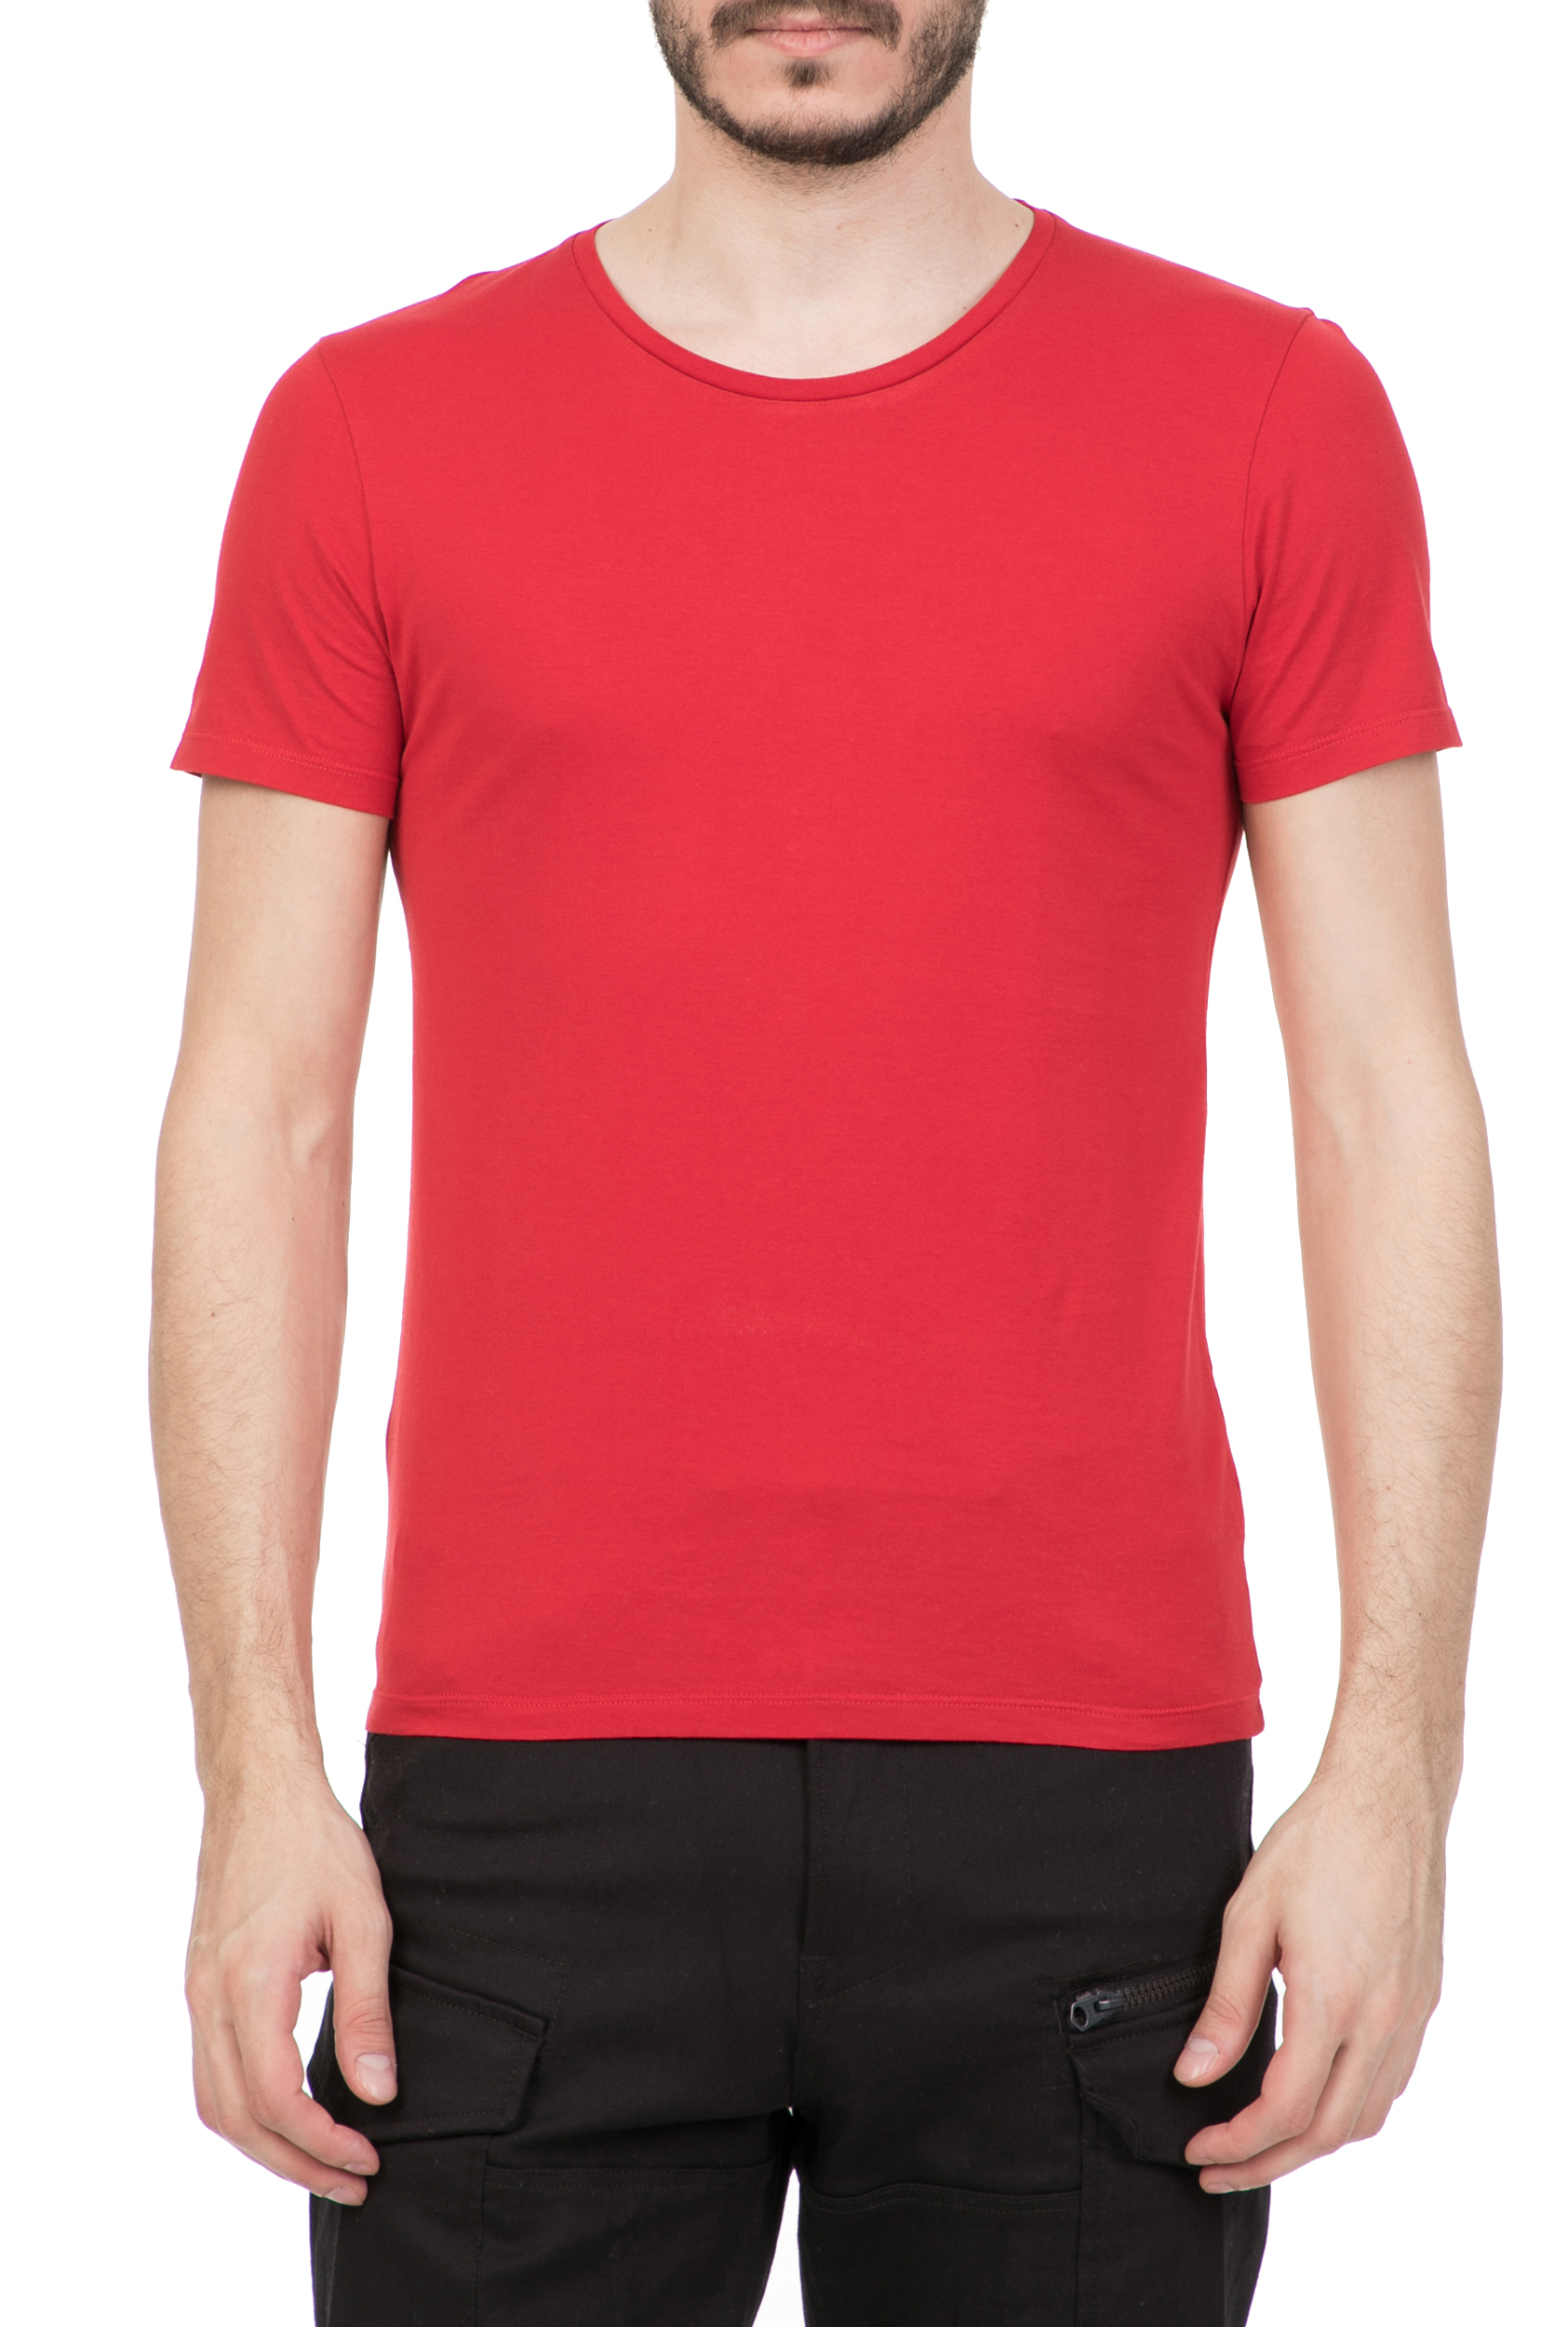 Ανδρικά/Ρούχα/Μπλούζες/Κοντομάνικες AMERICAN VINTAGE - Ανδρική κοντομάνικη μπλούζα American Vintage κόκκινη